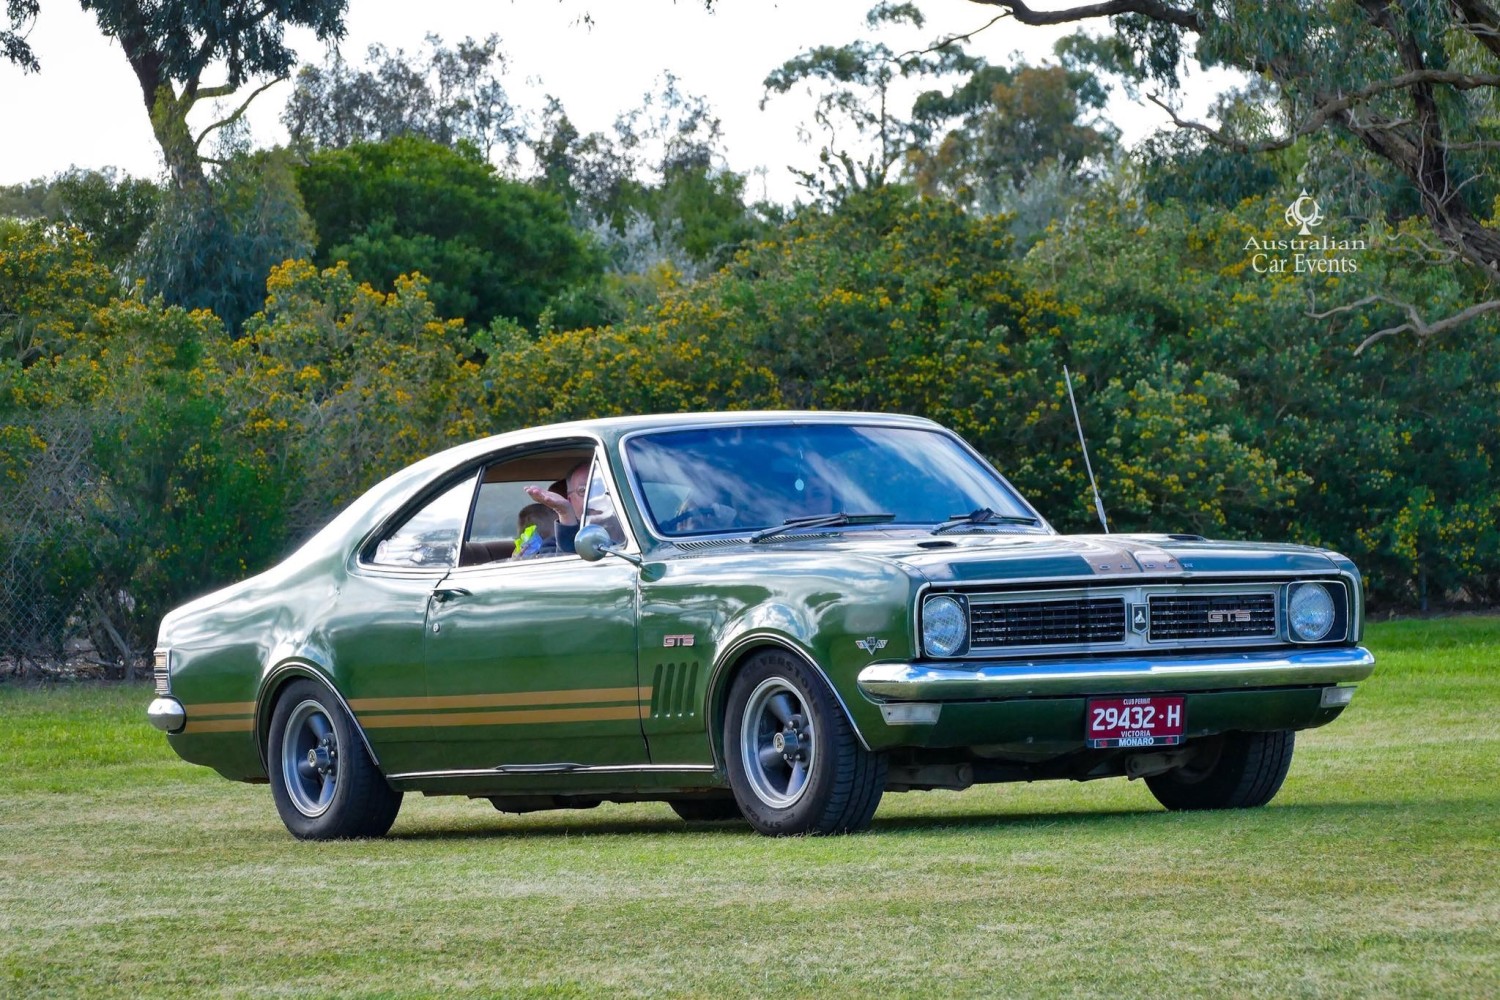 1970 Holden HT GTS Monaro